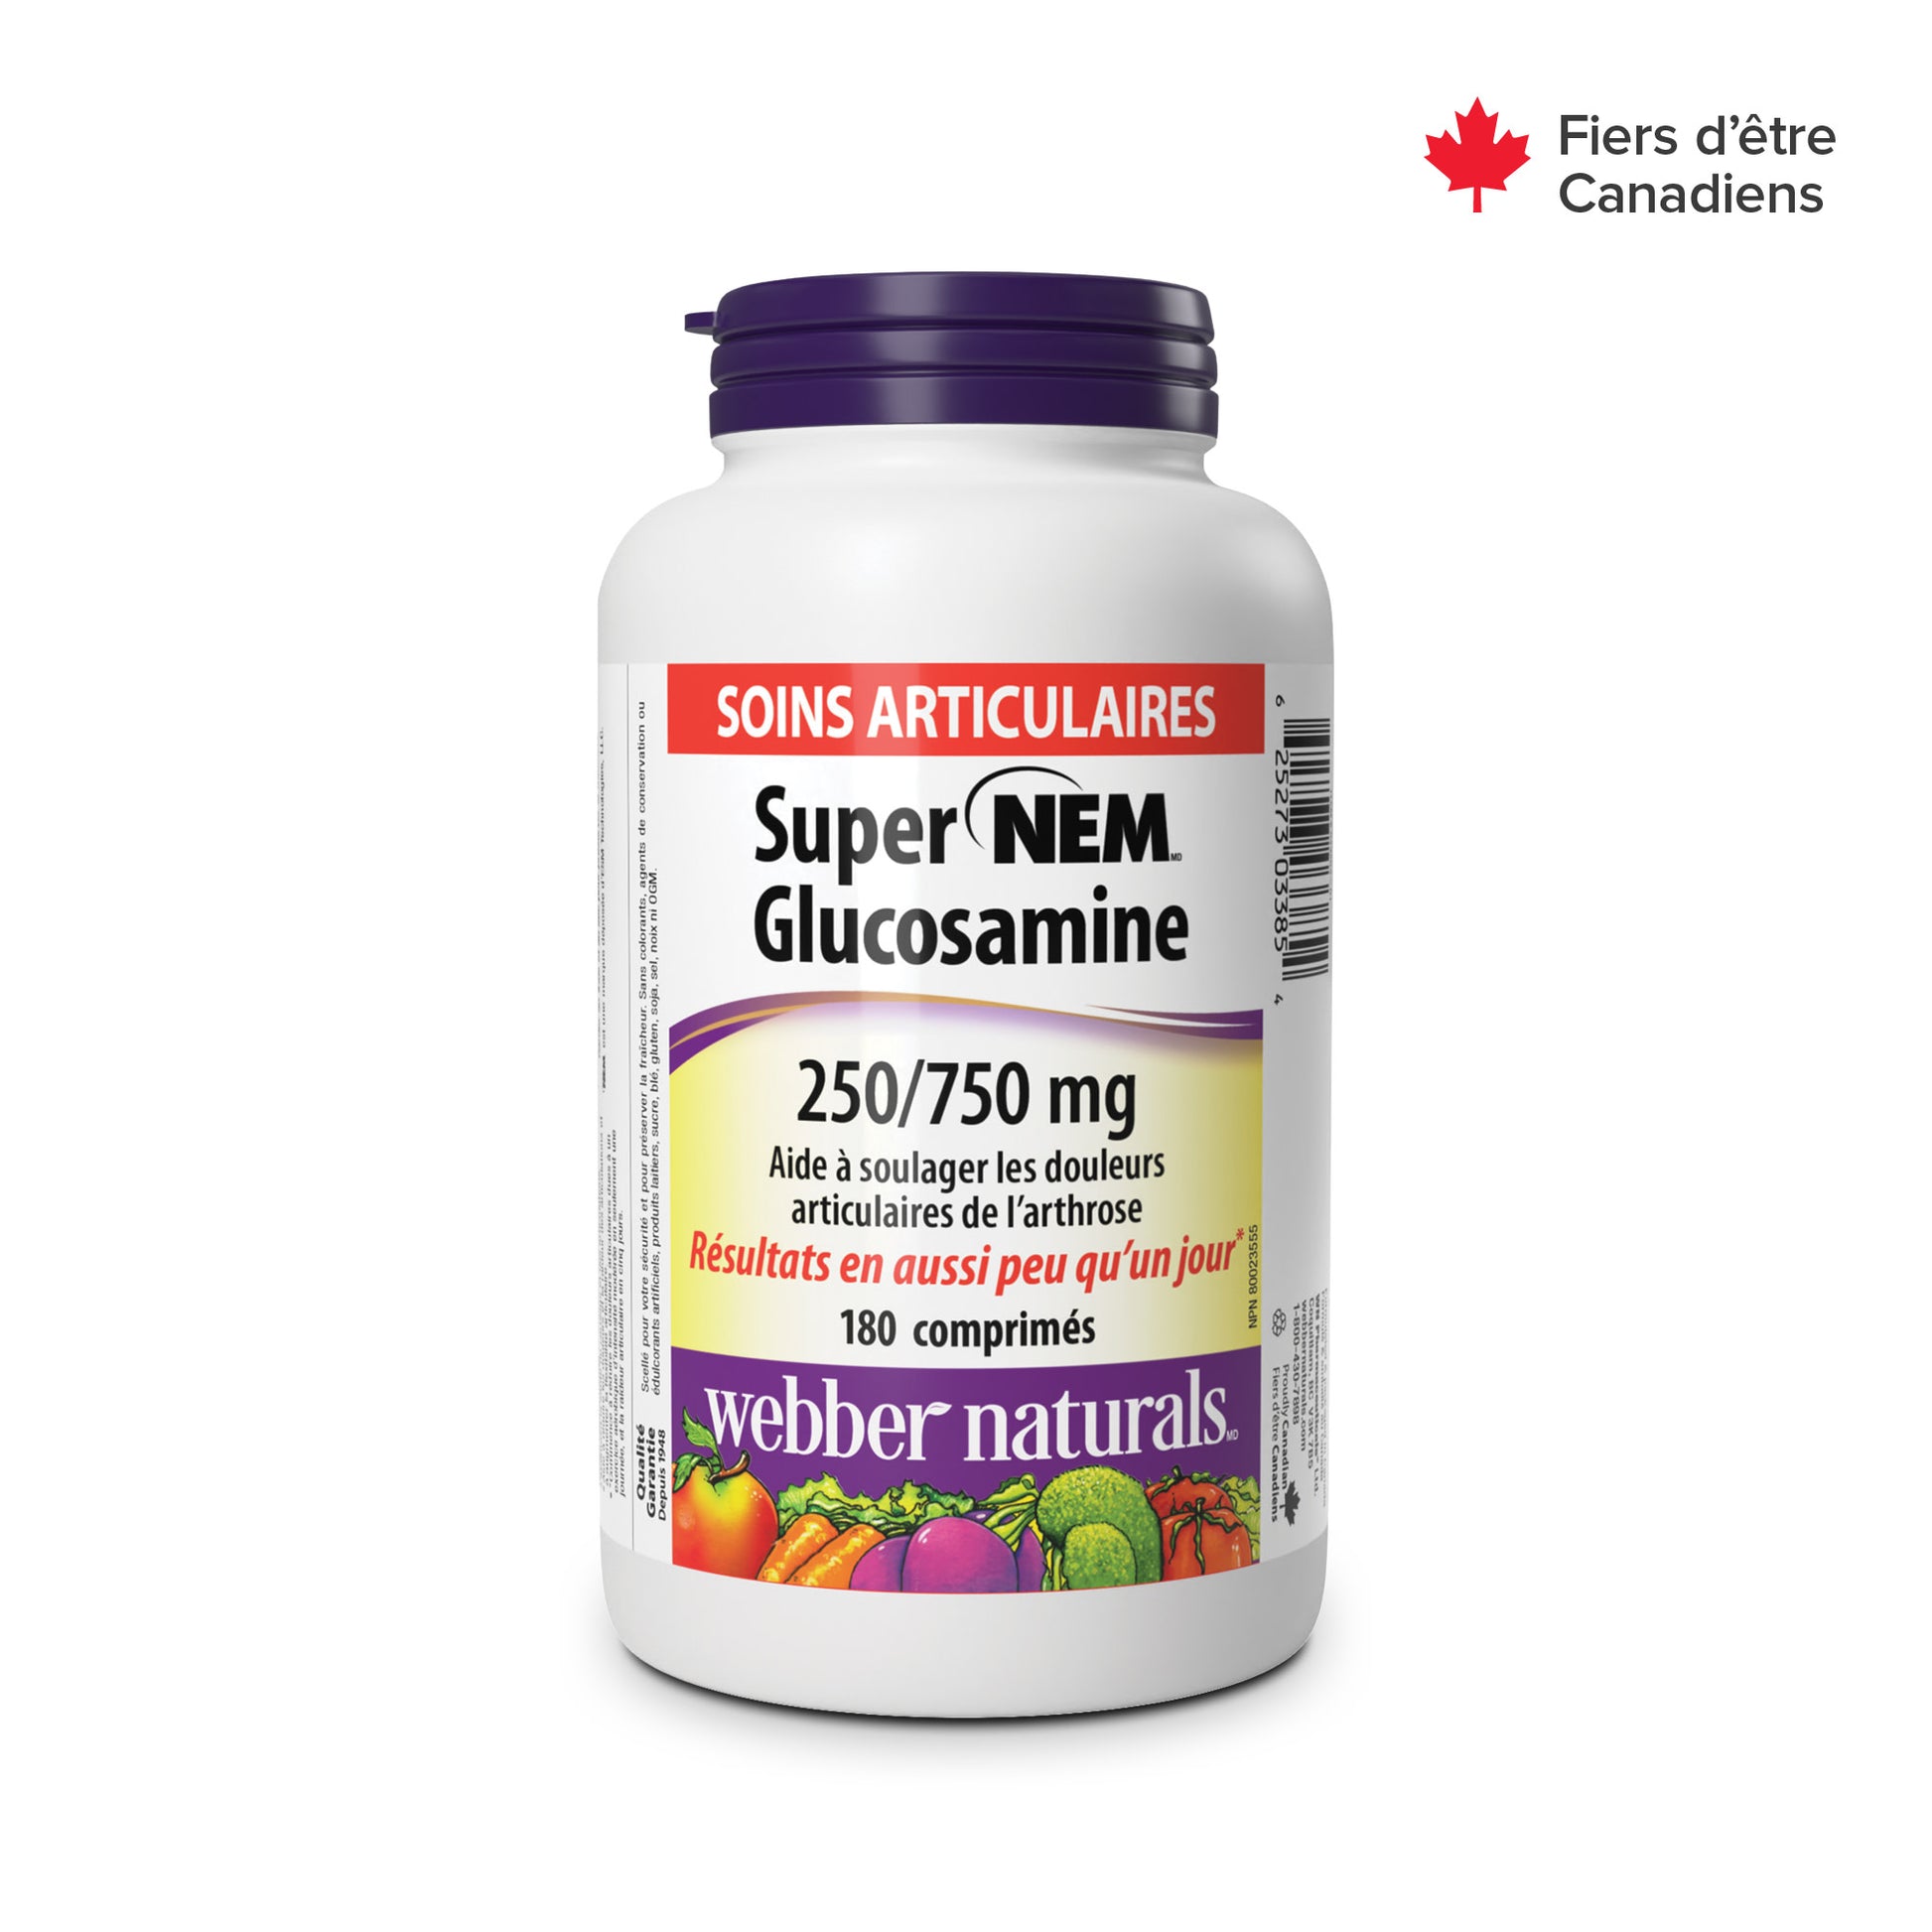 Super NEM(MD) Glucosamine 250/750 mg for Webber Naturals|v|hi-res|WN3385